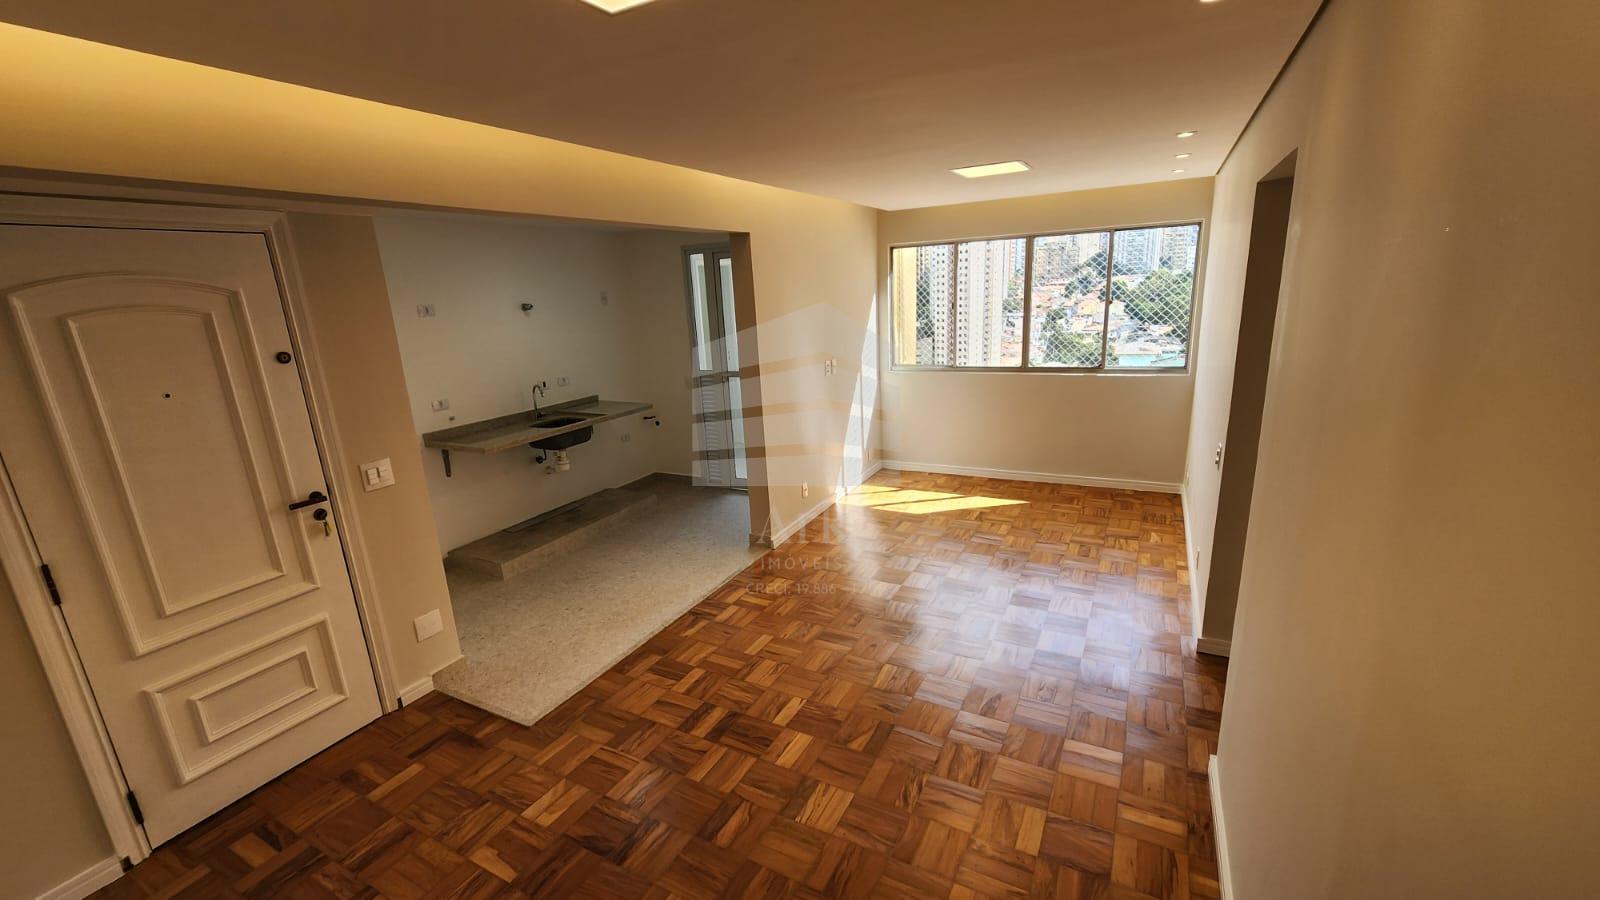 Apartamento reformado à venda, Chácara Inglesa, SAO PAULO - SP